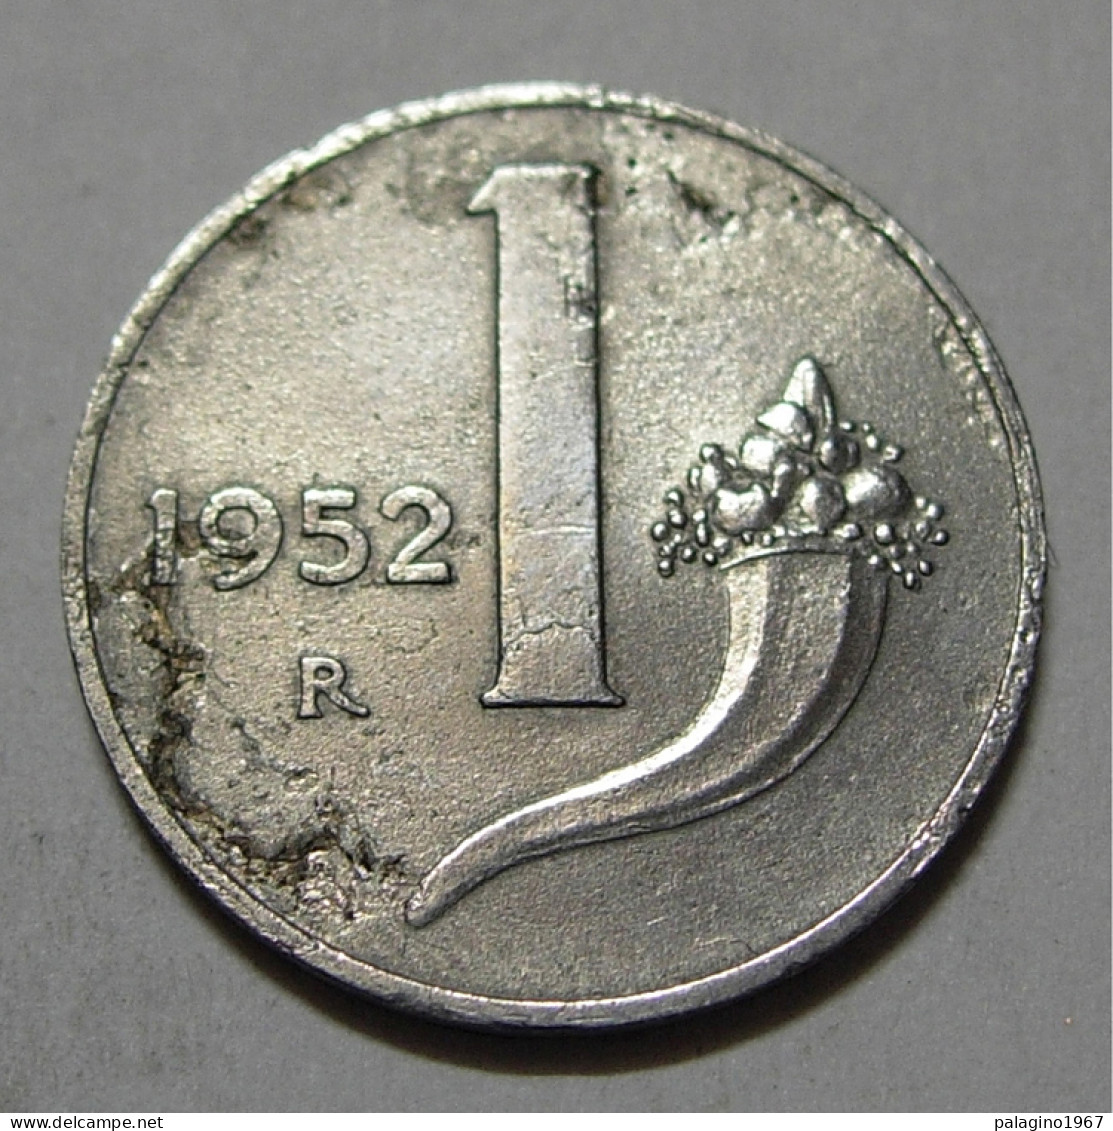 REPUBBLICA ITALIANA 1 Lira Cornucopia 1952 MB  - 1 Lire